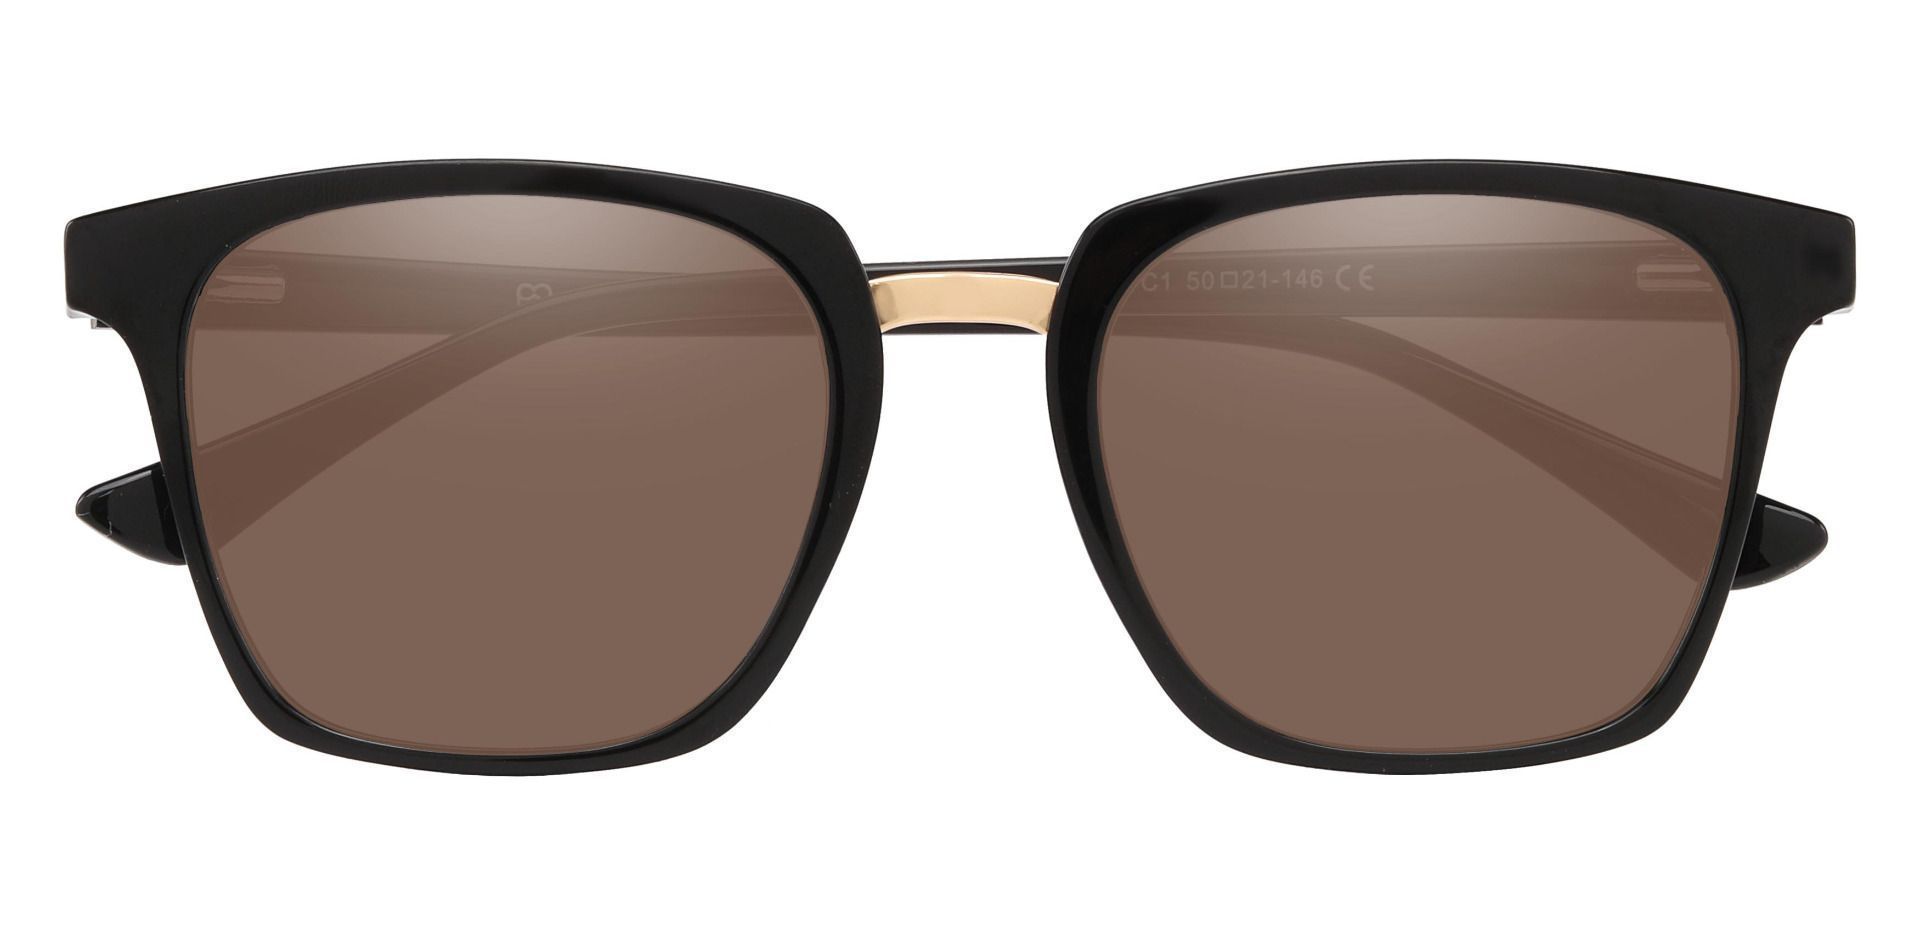 Delta Square Non-Rx Sunglasses - Black Frame With Brown Lenses